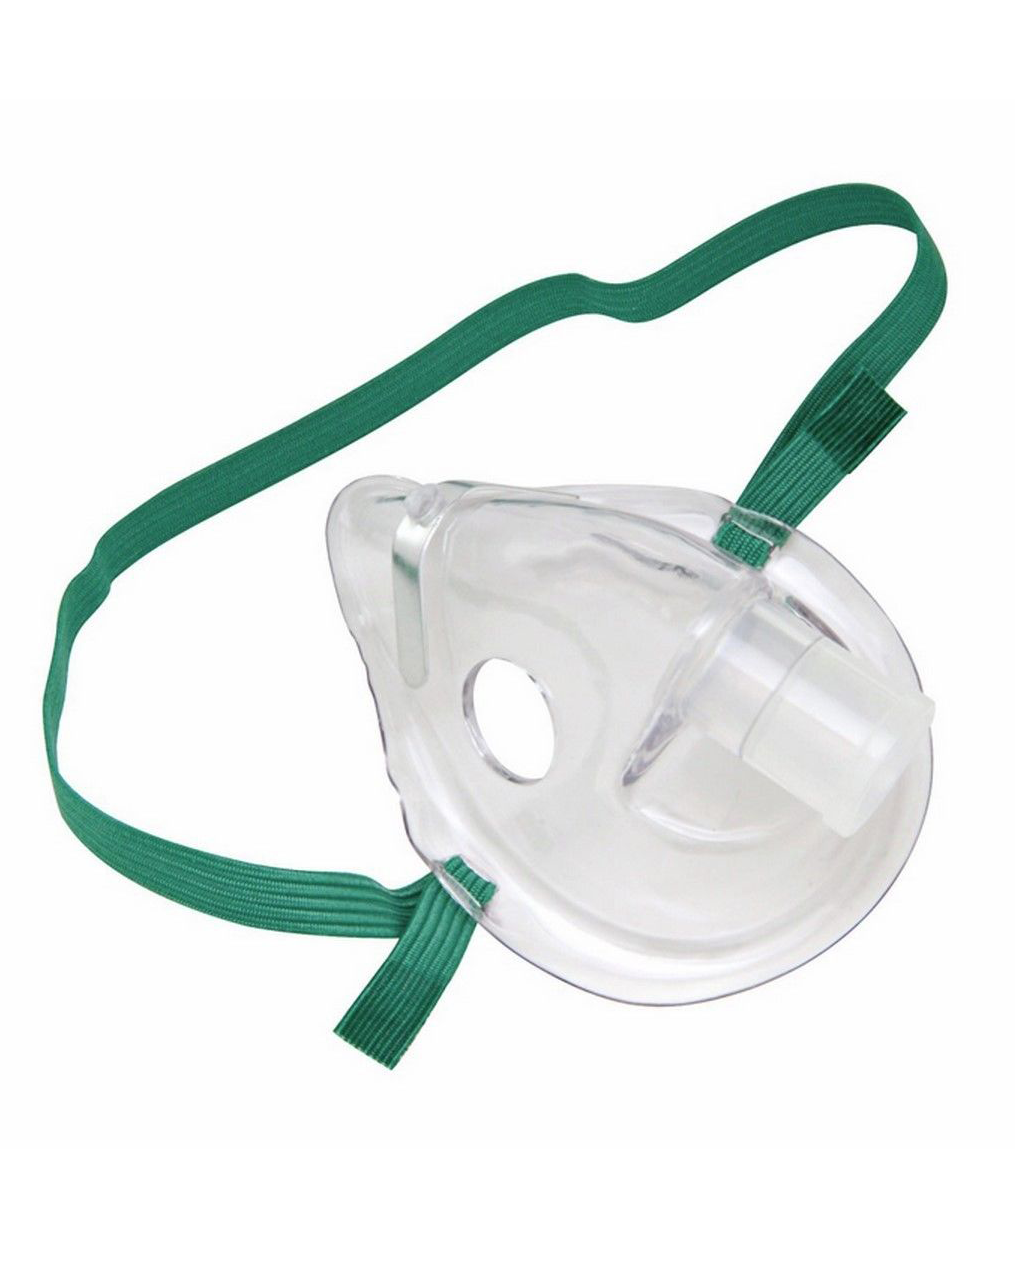 Omron Adult Nebulizer Mask